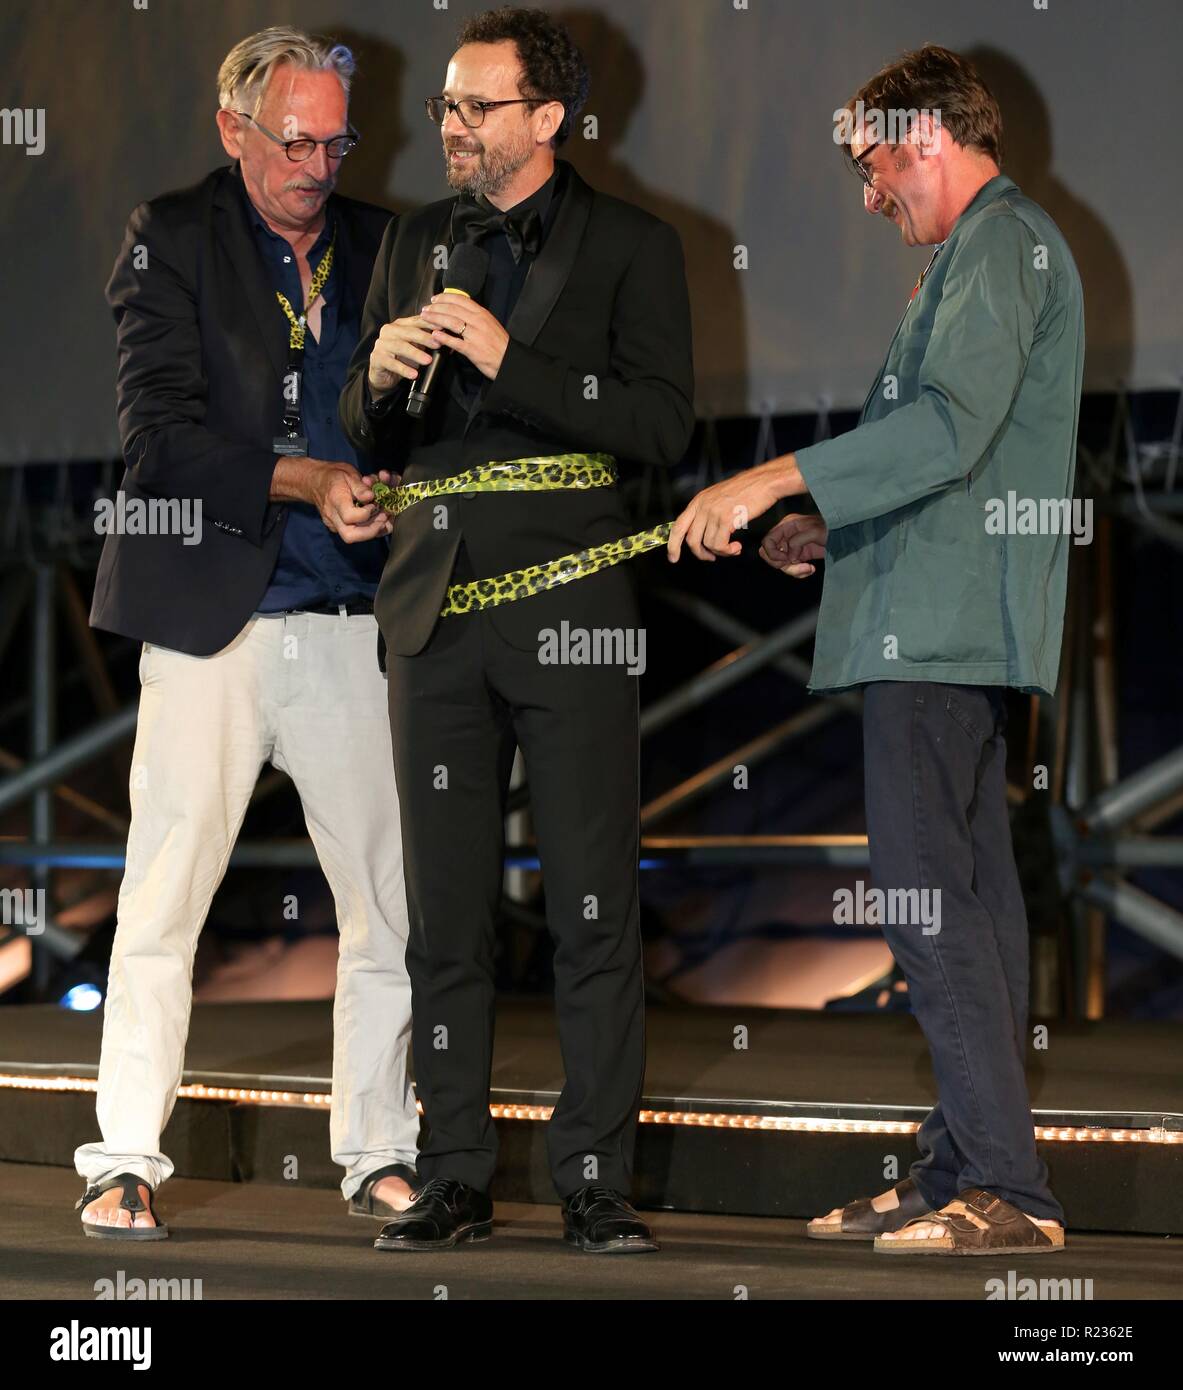 LOCARNO, Svizzera - 11 Ago, 2018: Carlo Chatrian davanti alla "Mi sento bene" proiezione al 71esimo Festival del Film di Locarno (foto: Mickael Chavet) Foto Stock